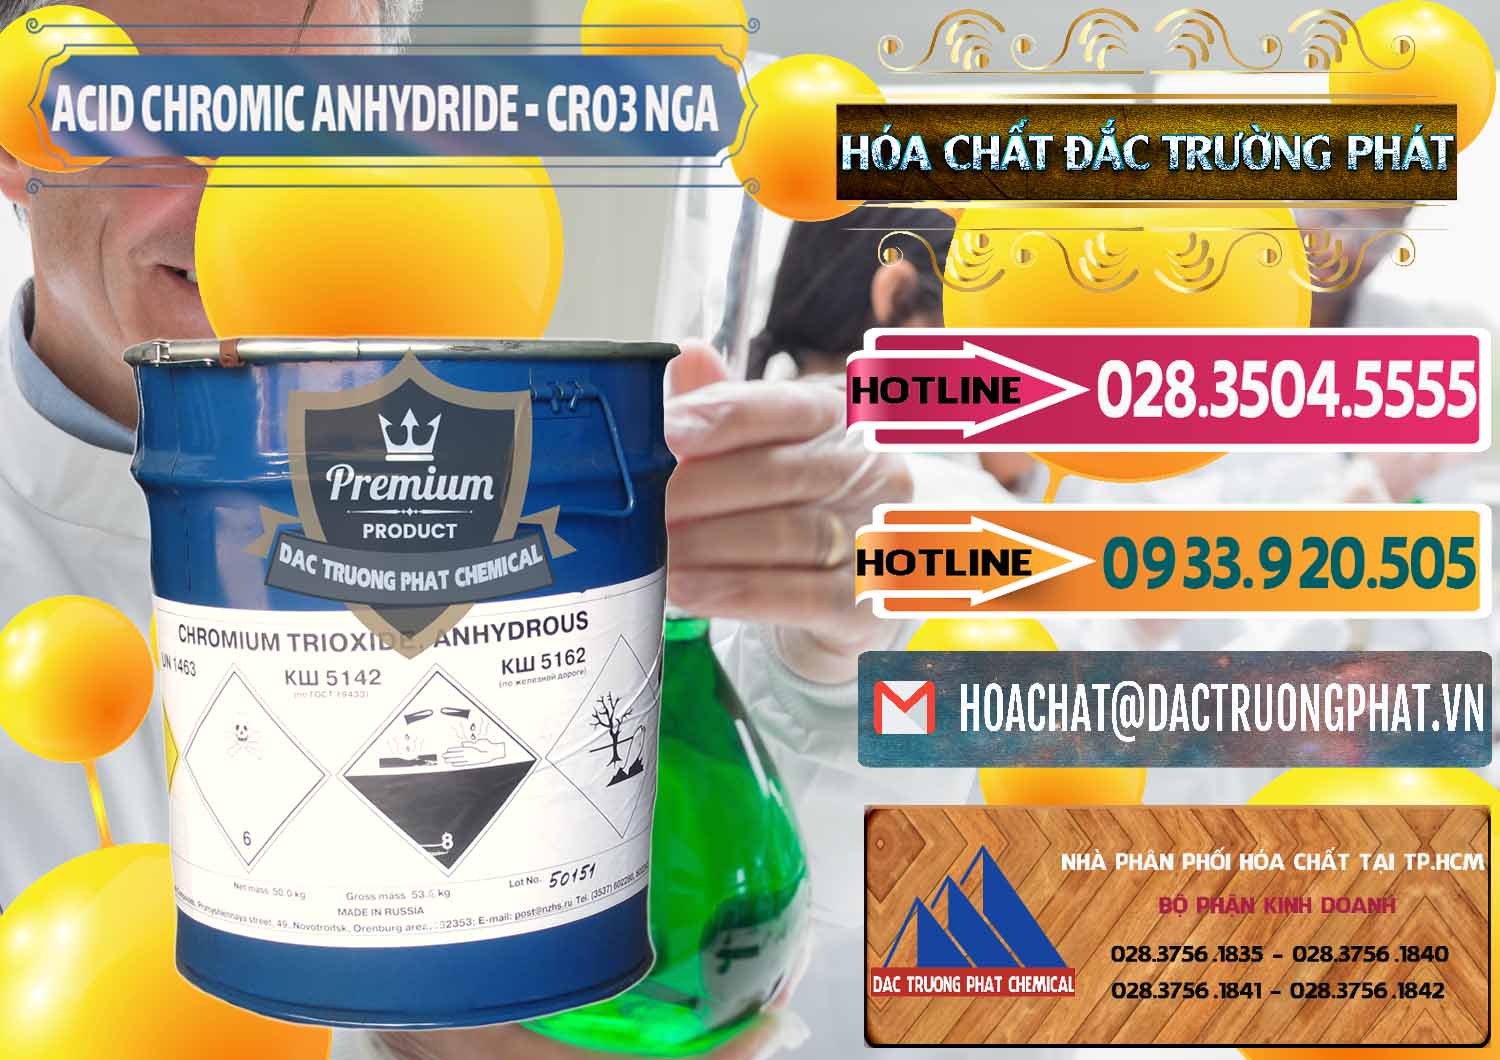 Cty chuyên bán ( cung ứng ) Acid Chromic Anhydride - Cromic CRO3 Nga Russia - 0006 - Nơi chuyên kinh doanh & phân phối hóa chất tại TP.HCM - dactruongphat.vn